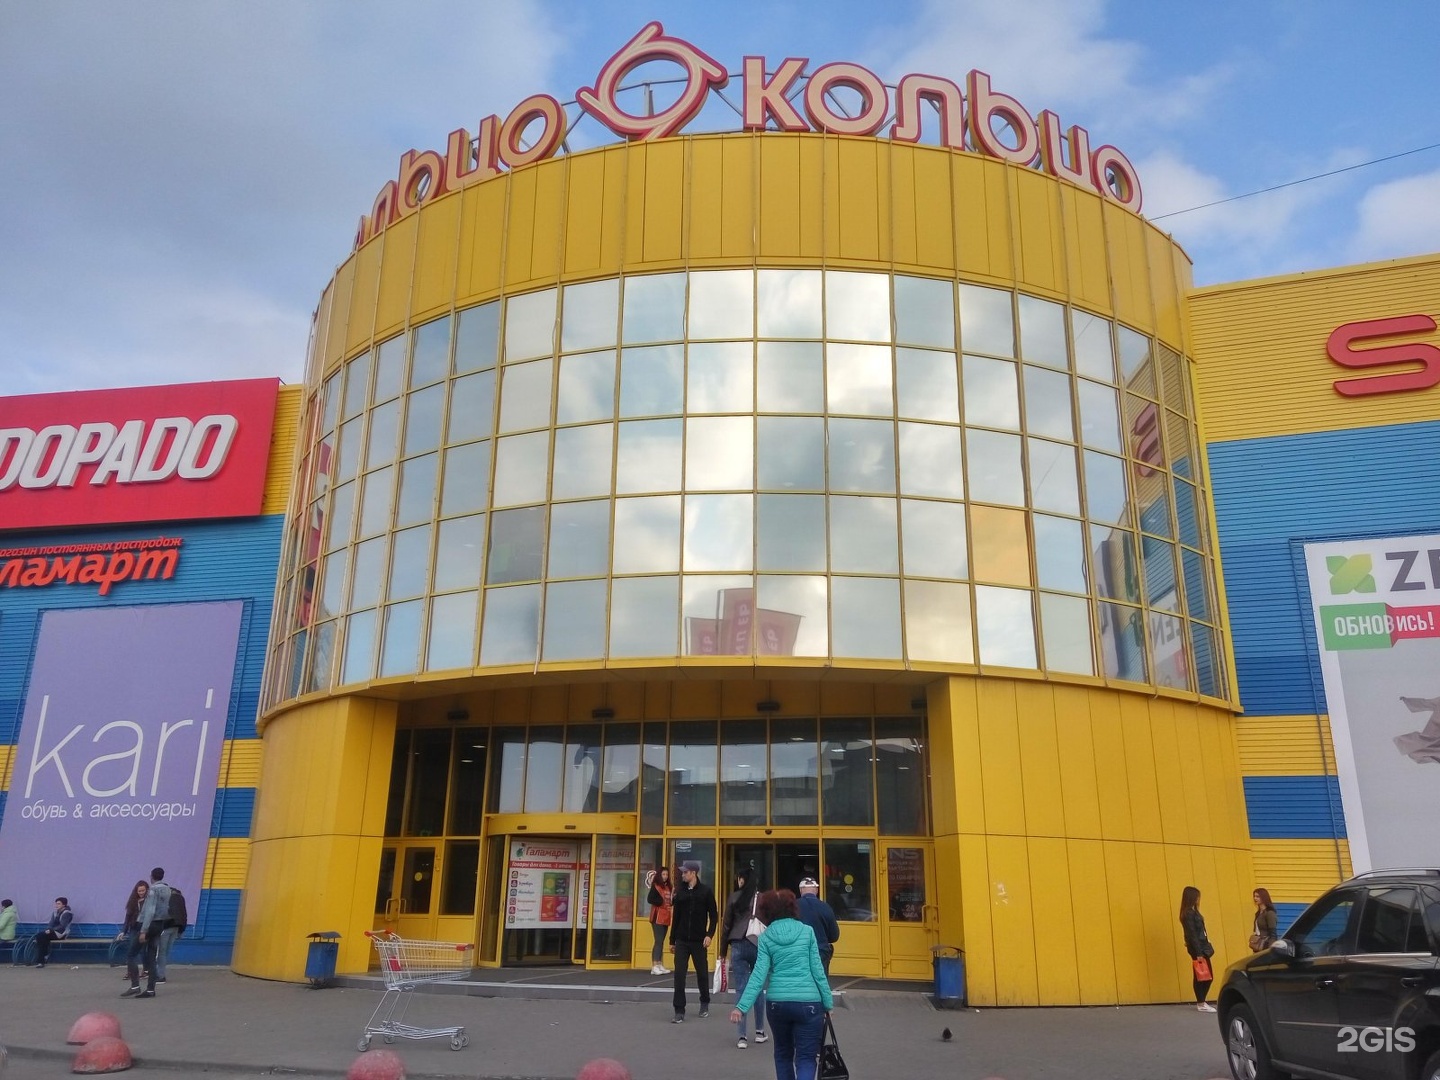 Кольцо торговый центр Челябинск